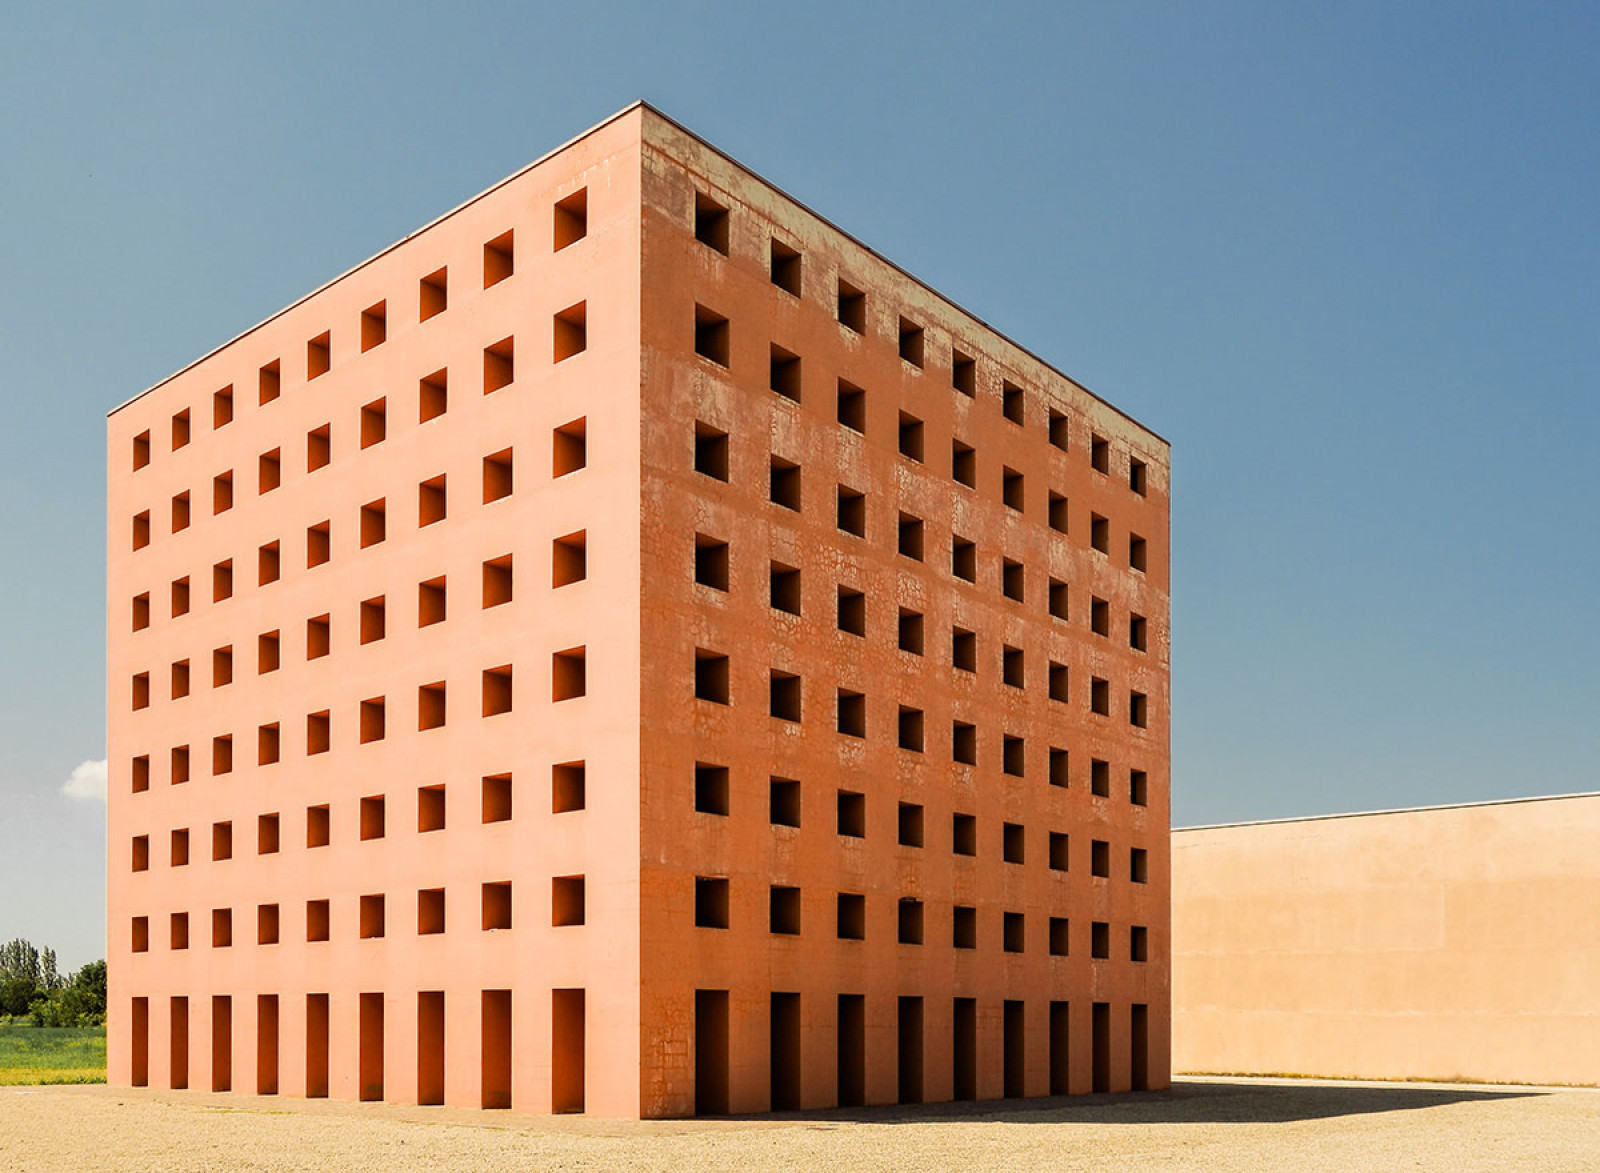 Категорія "Архітектура". 2 місце: Alessandro Gallo, “The Cube and the silence”